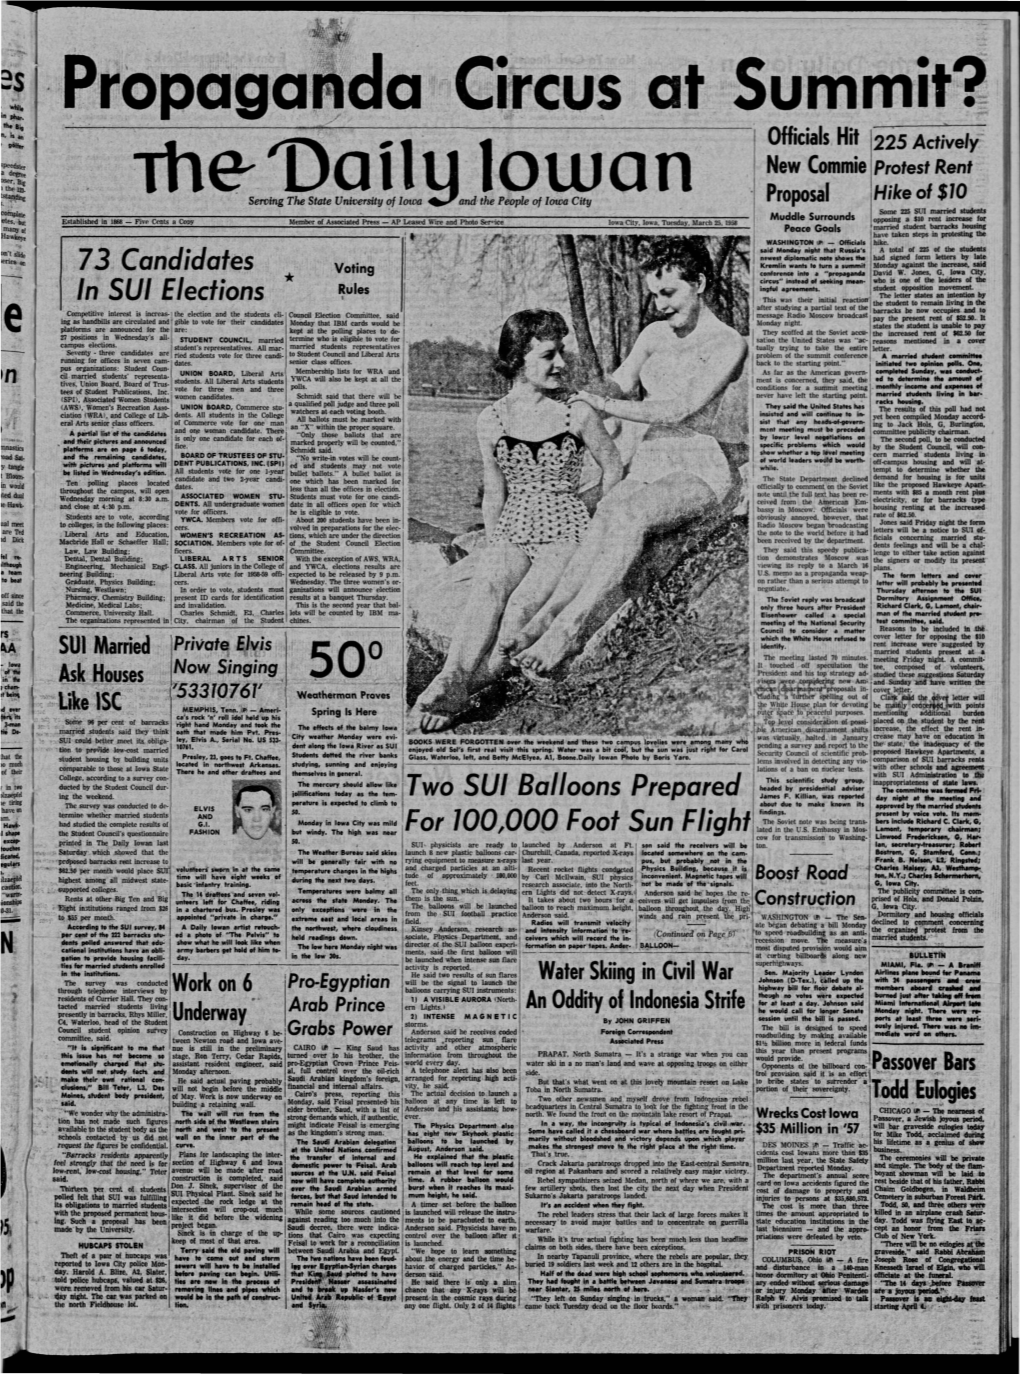 Daily Iowan (Iowa City, Iowa), 1958-03-25